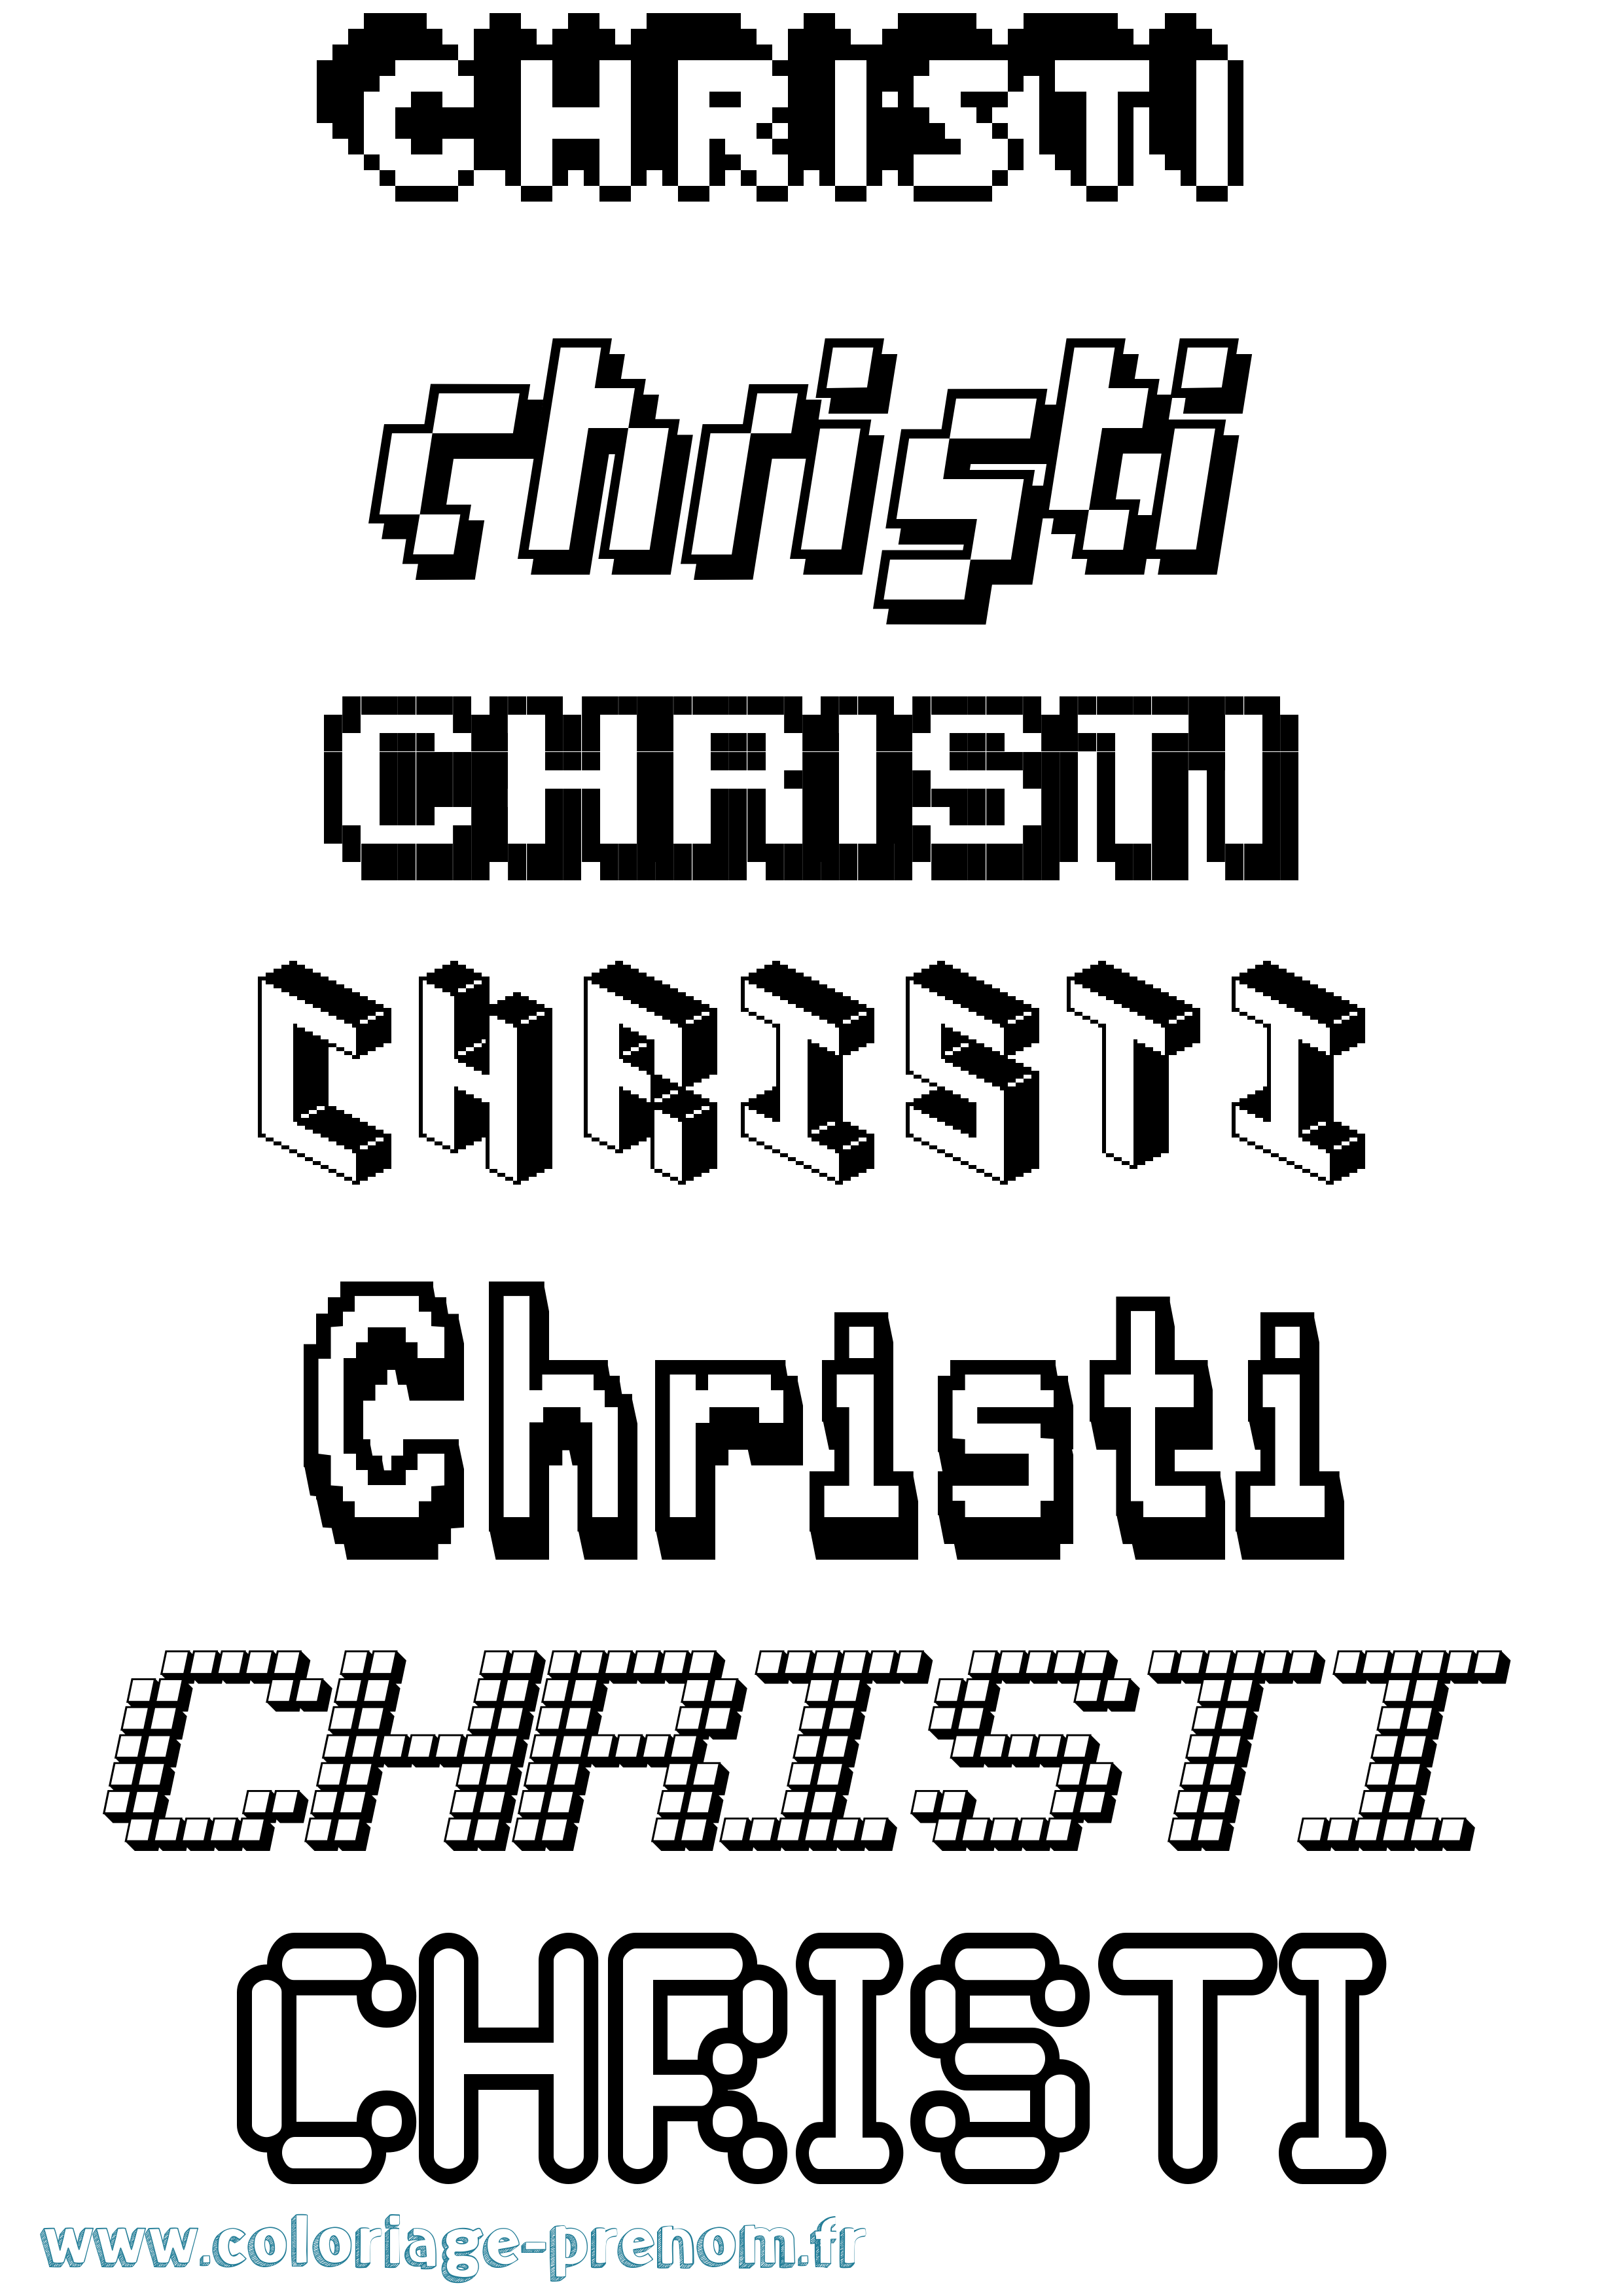 Coloriage prénom Christi Pixel